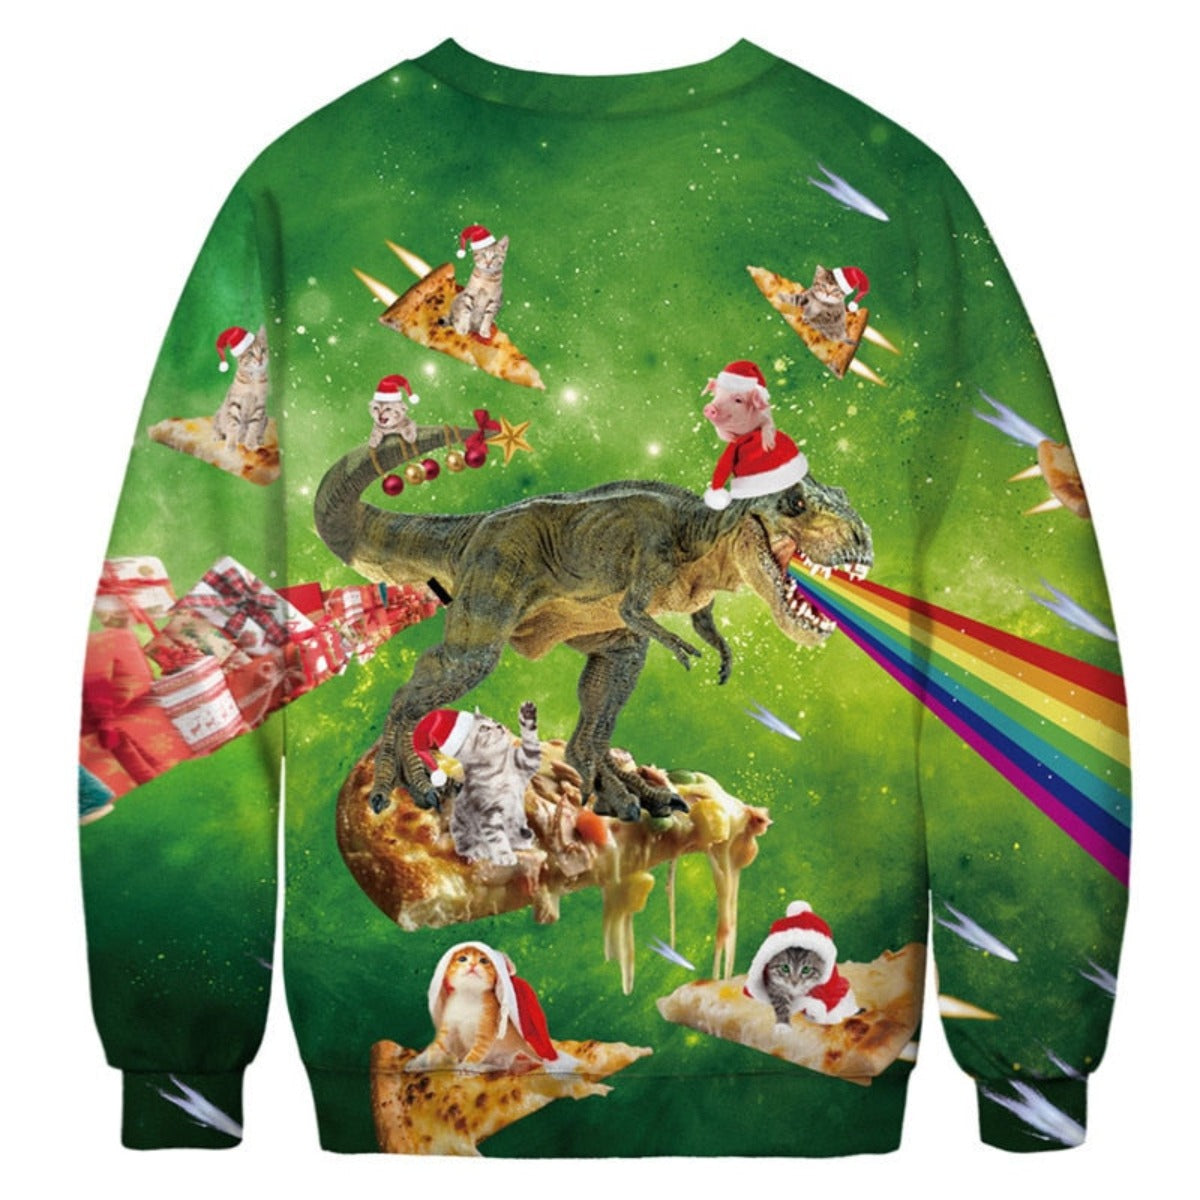 Xmas Dino Ugly Christmas Sweater